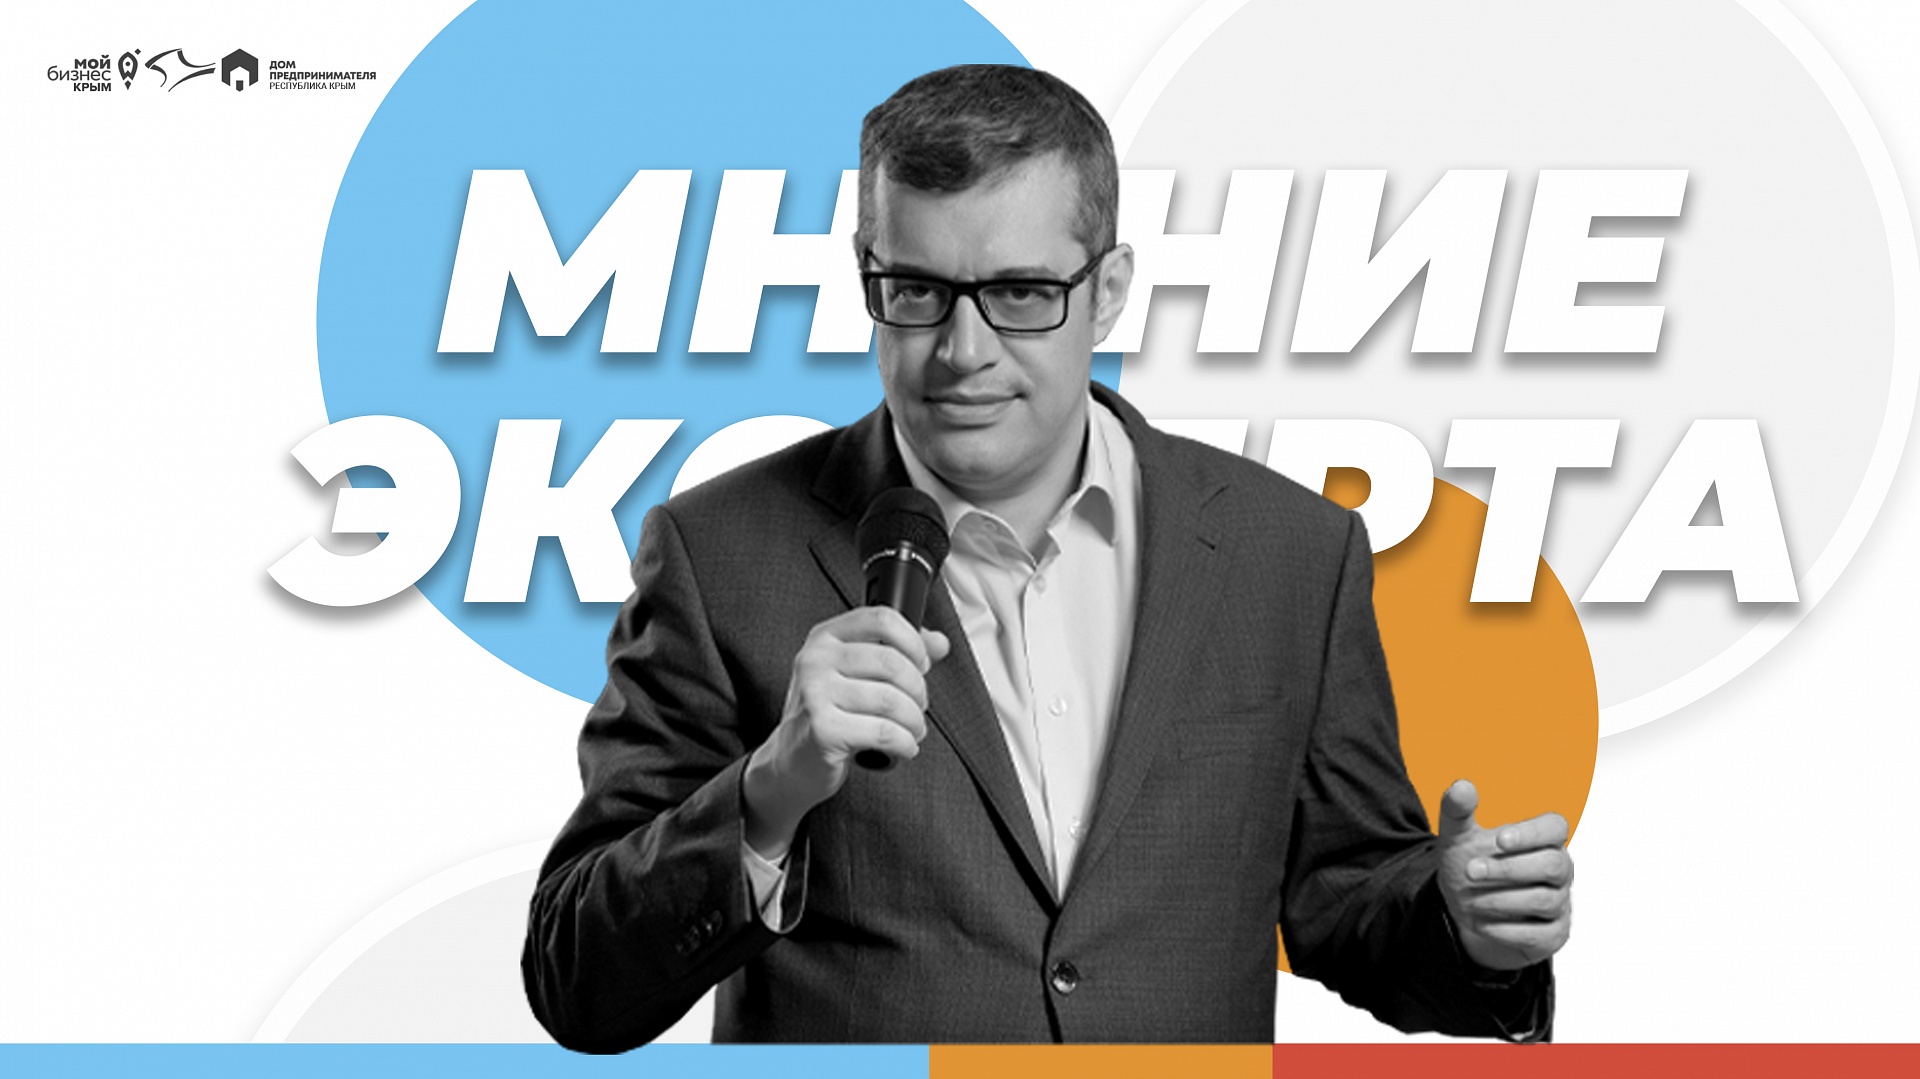 Как мотивировать сотрудников и сделать свой бизнес лучшим? Рассказал Максим Поташев на вебинаре «Современные методы управления персоналом»!